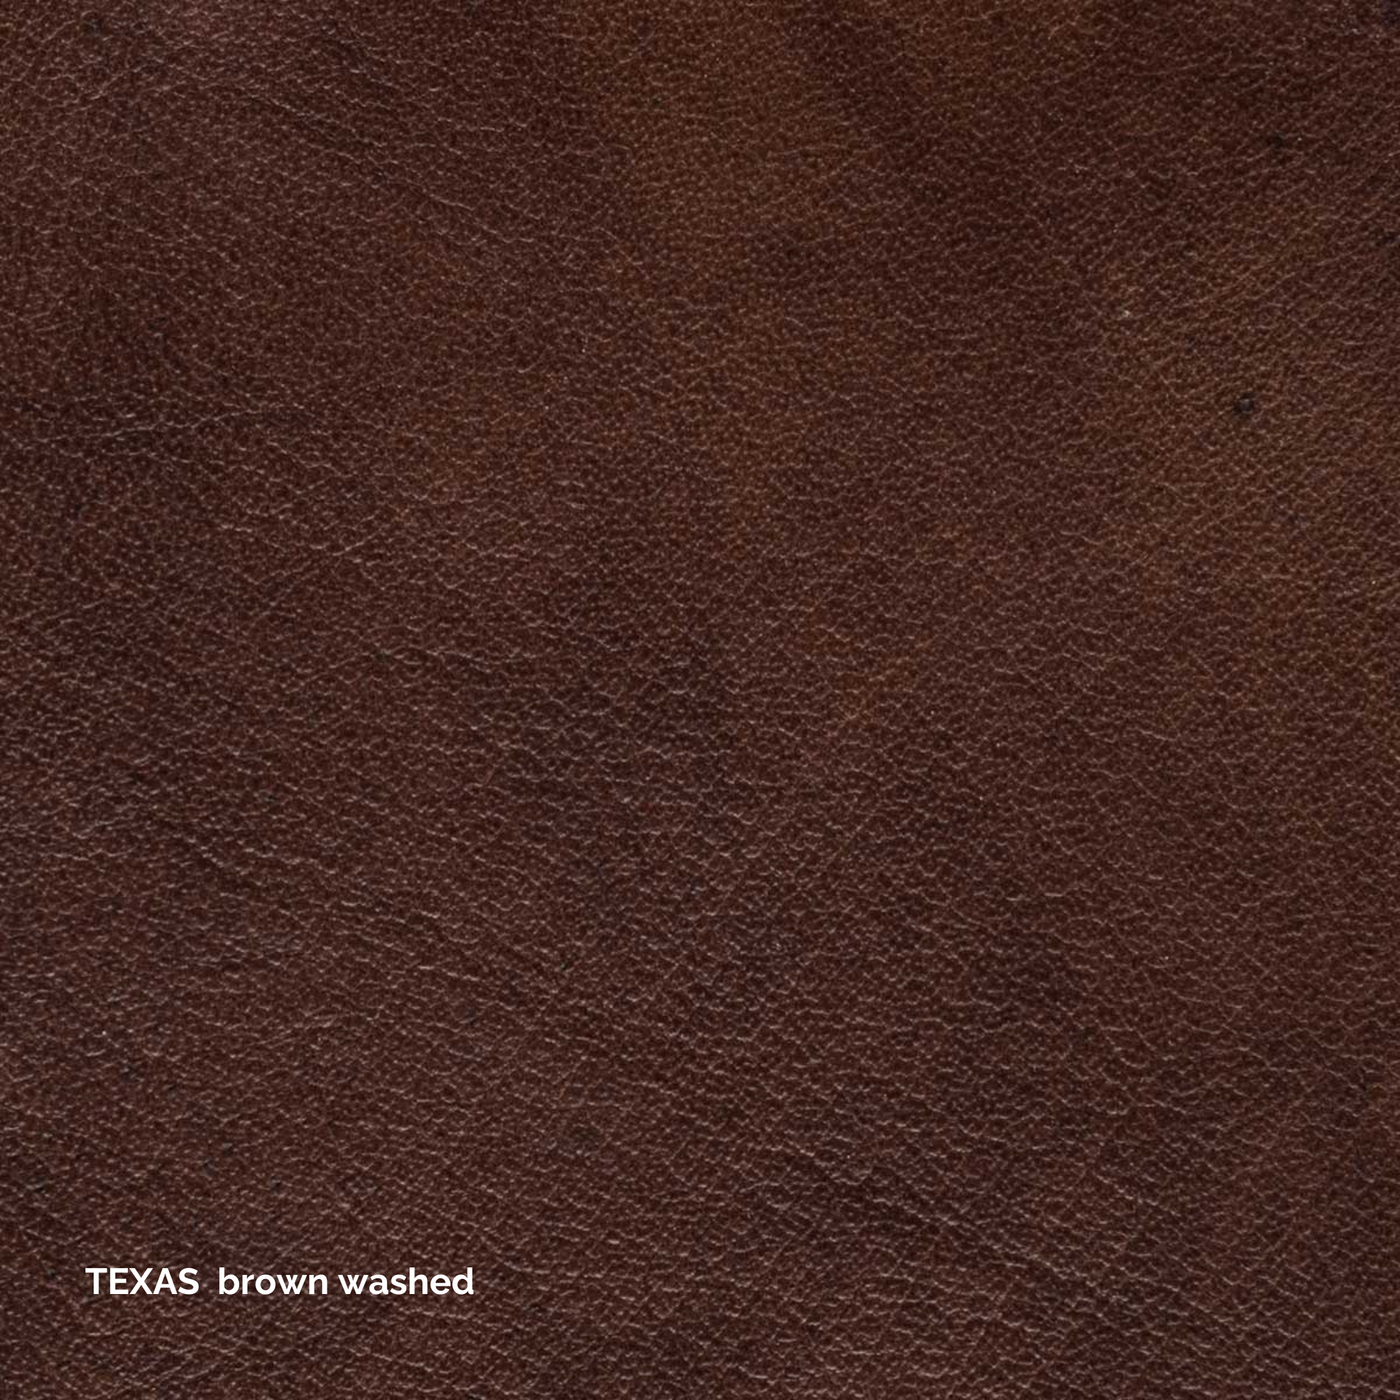 Ole Stuhl - Leder Texas Washed Brown